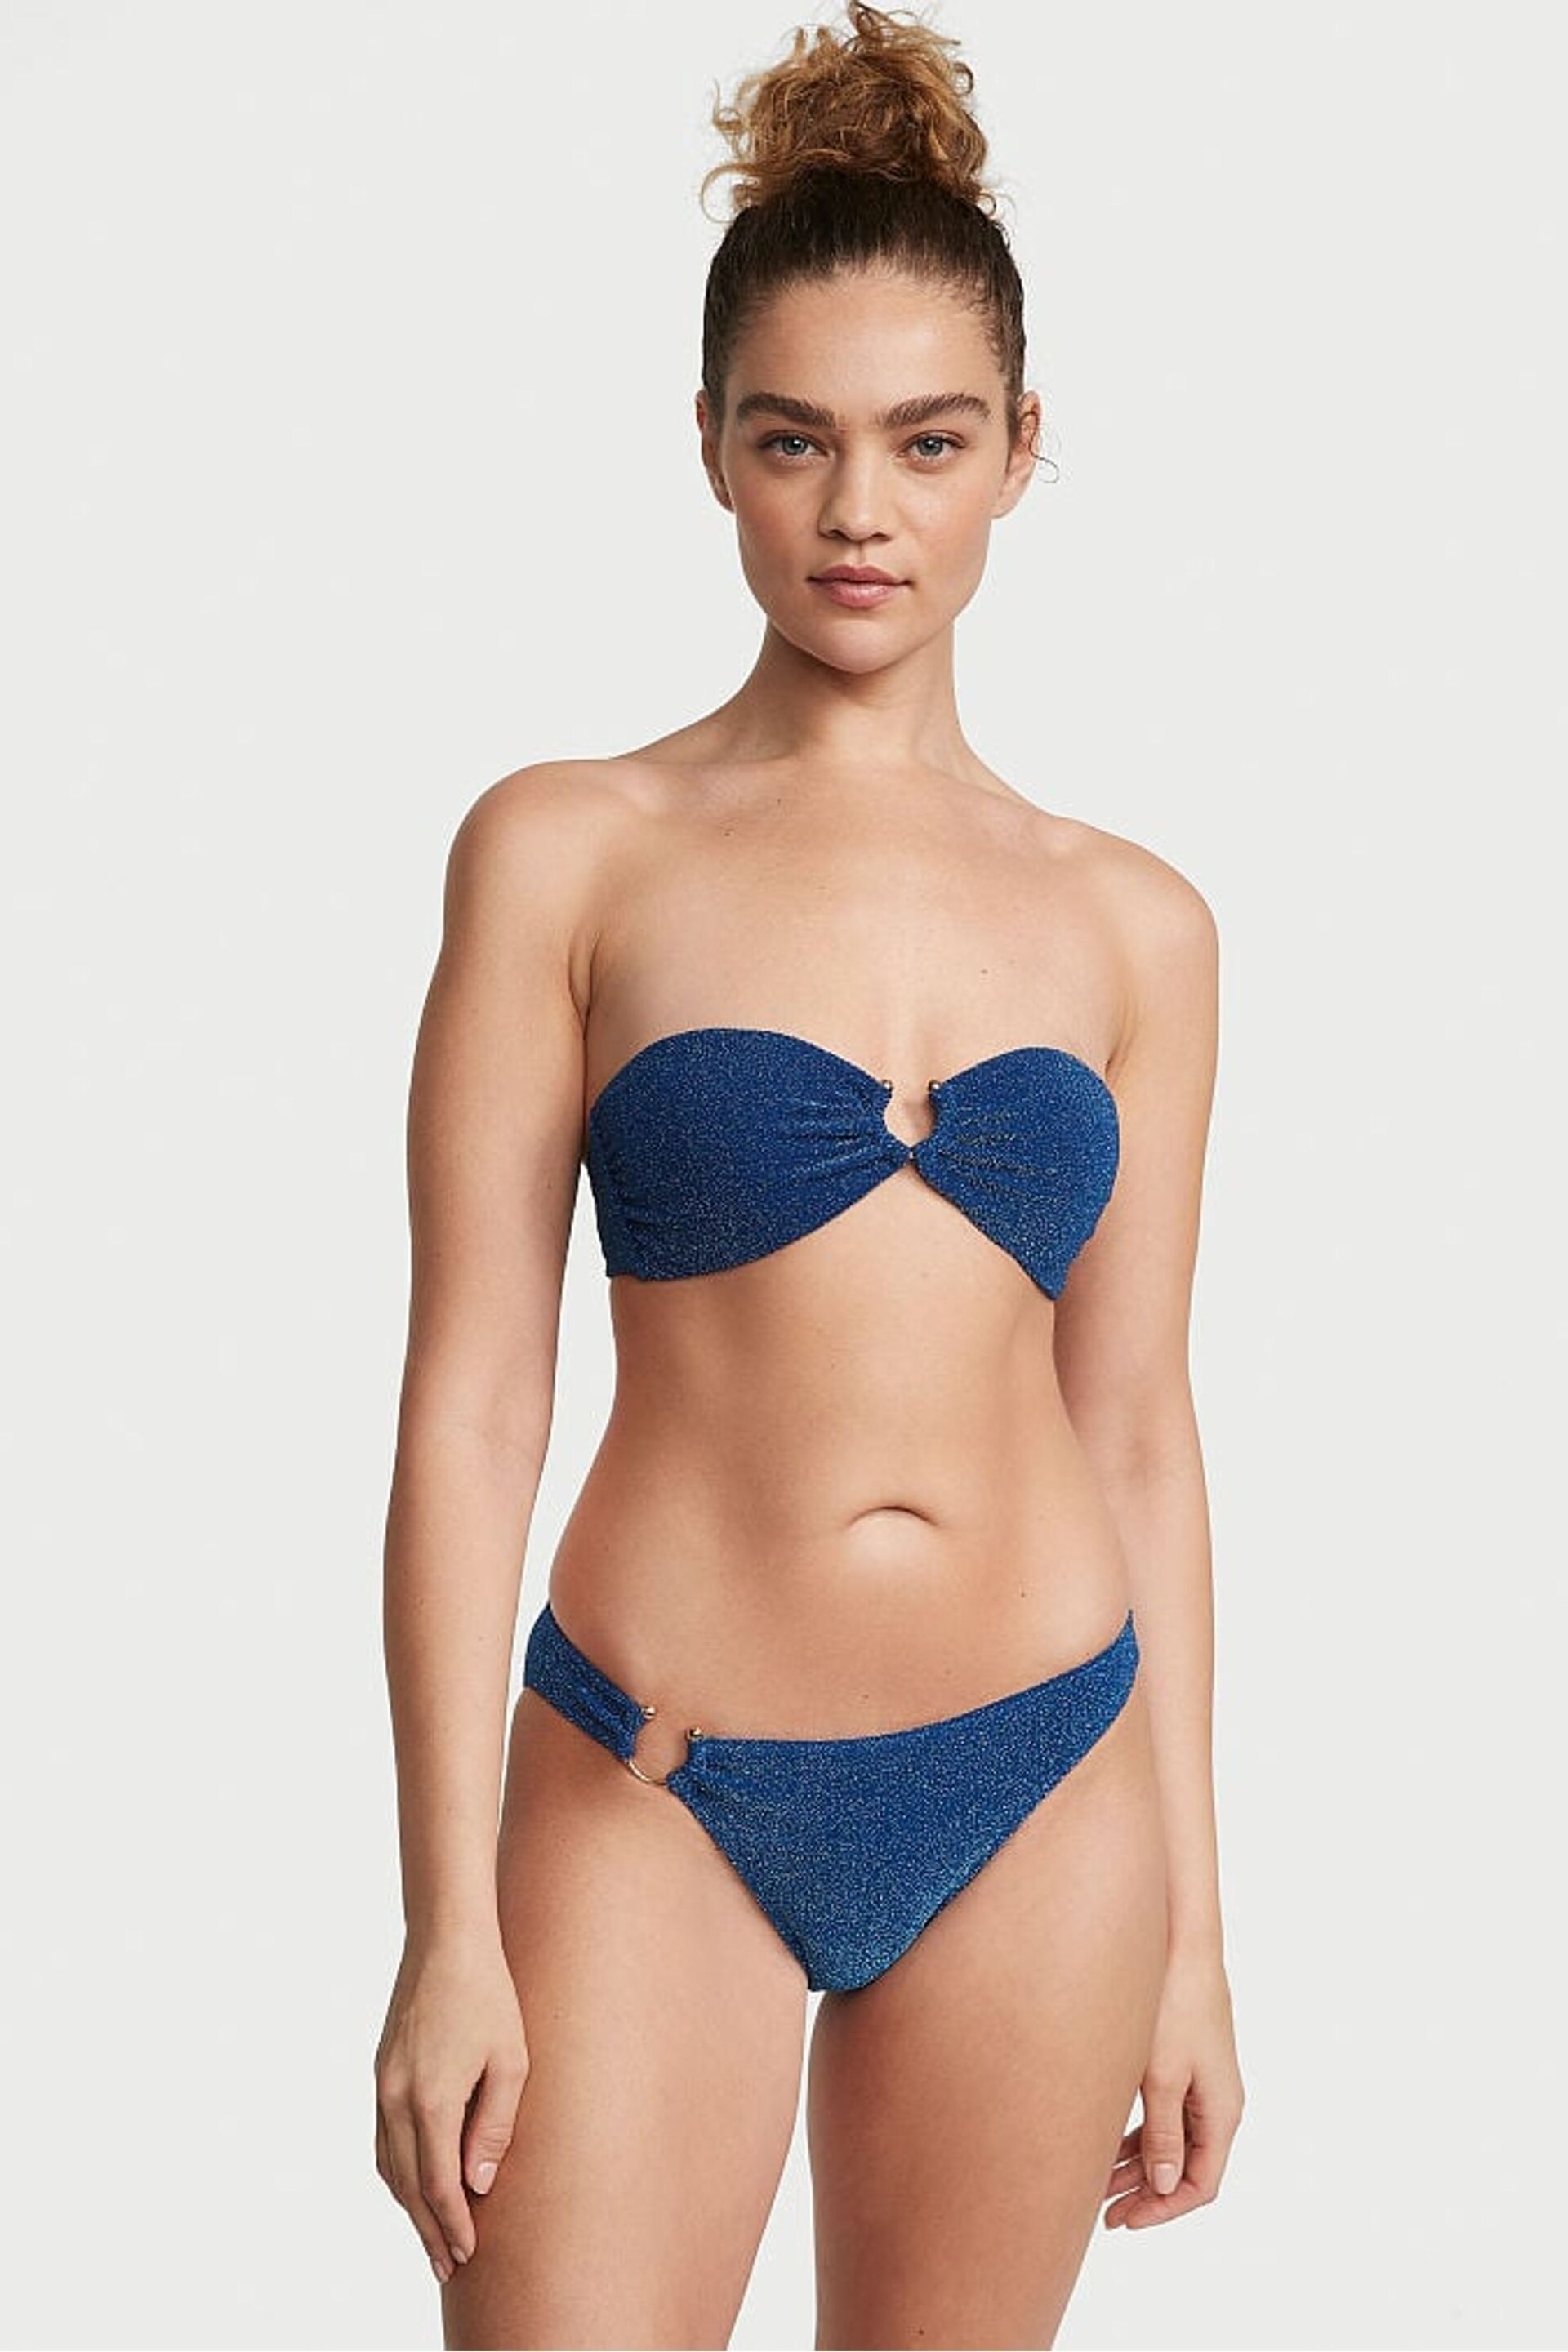 Victoria's Secret Diver Blue Cheeky Shimmer Swim Bikini Bottom - Image 1 of 3